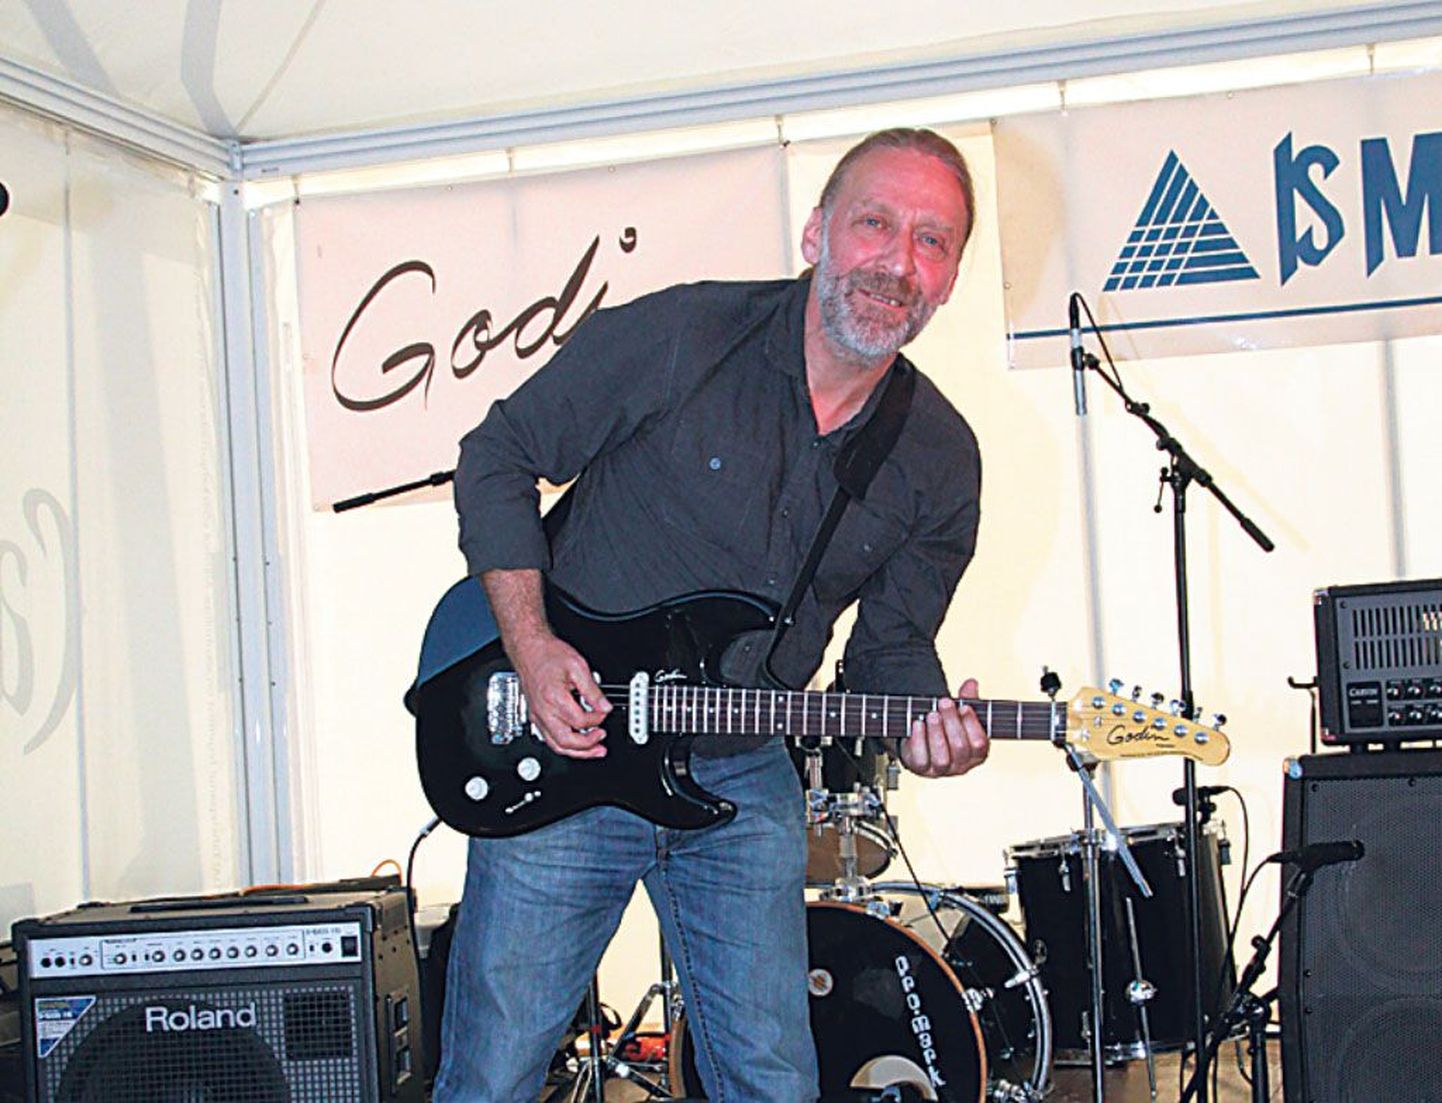 Suurbritannia muusik Steve Morrison näitab õpitubades osalejate vahel väljaloositud Godini kitarri.